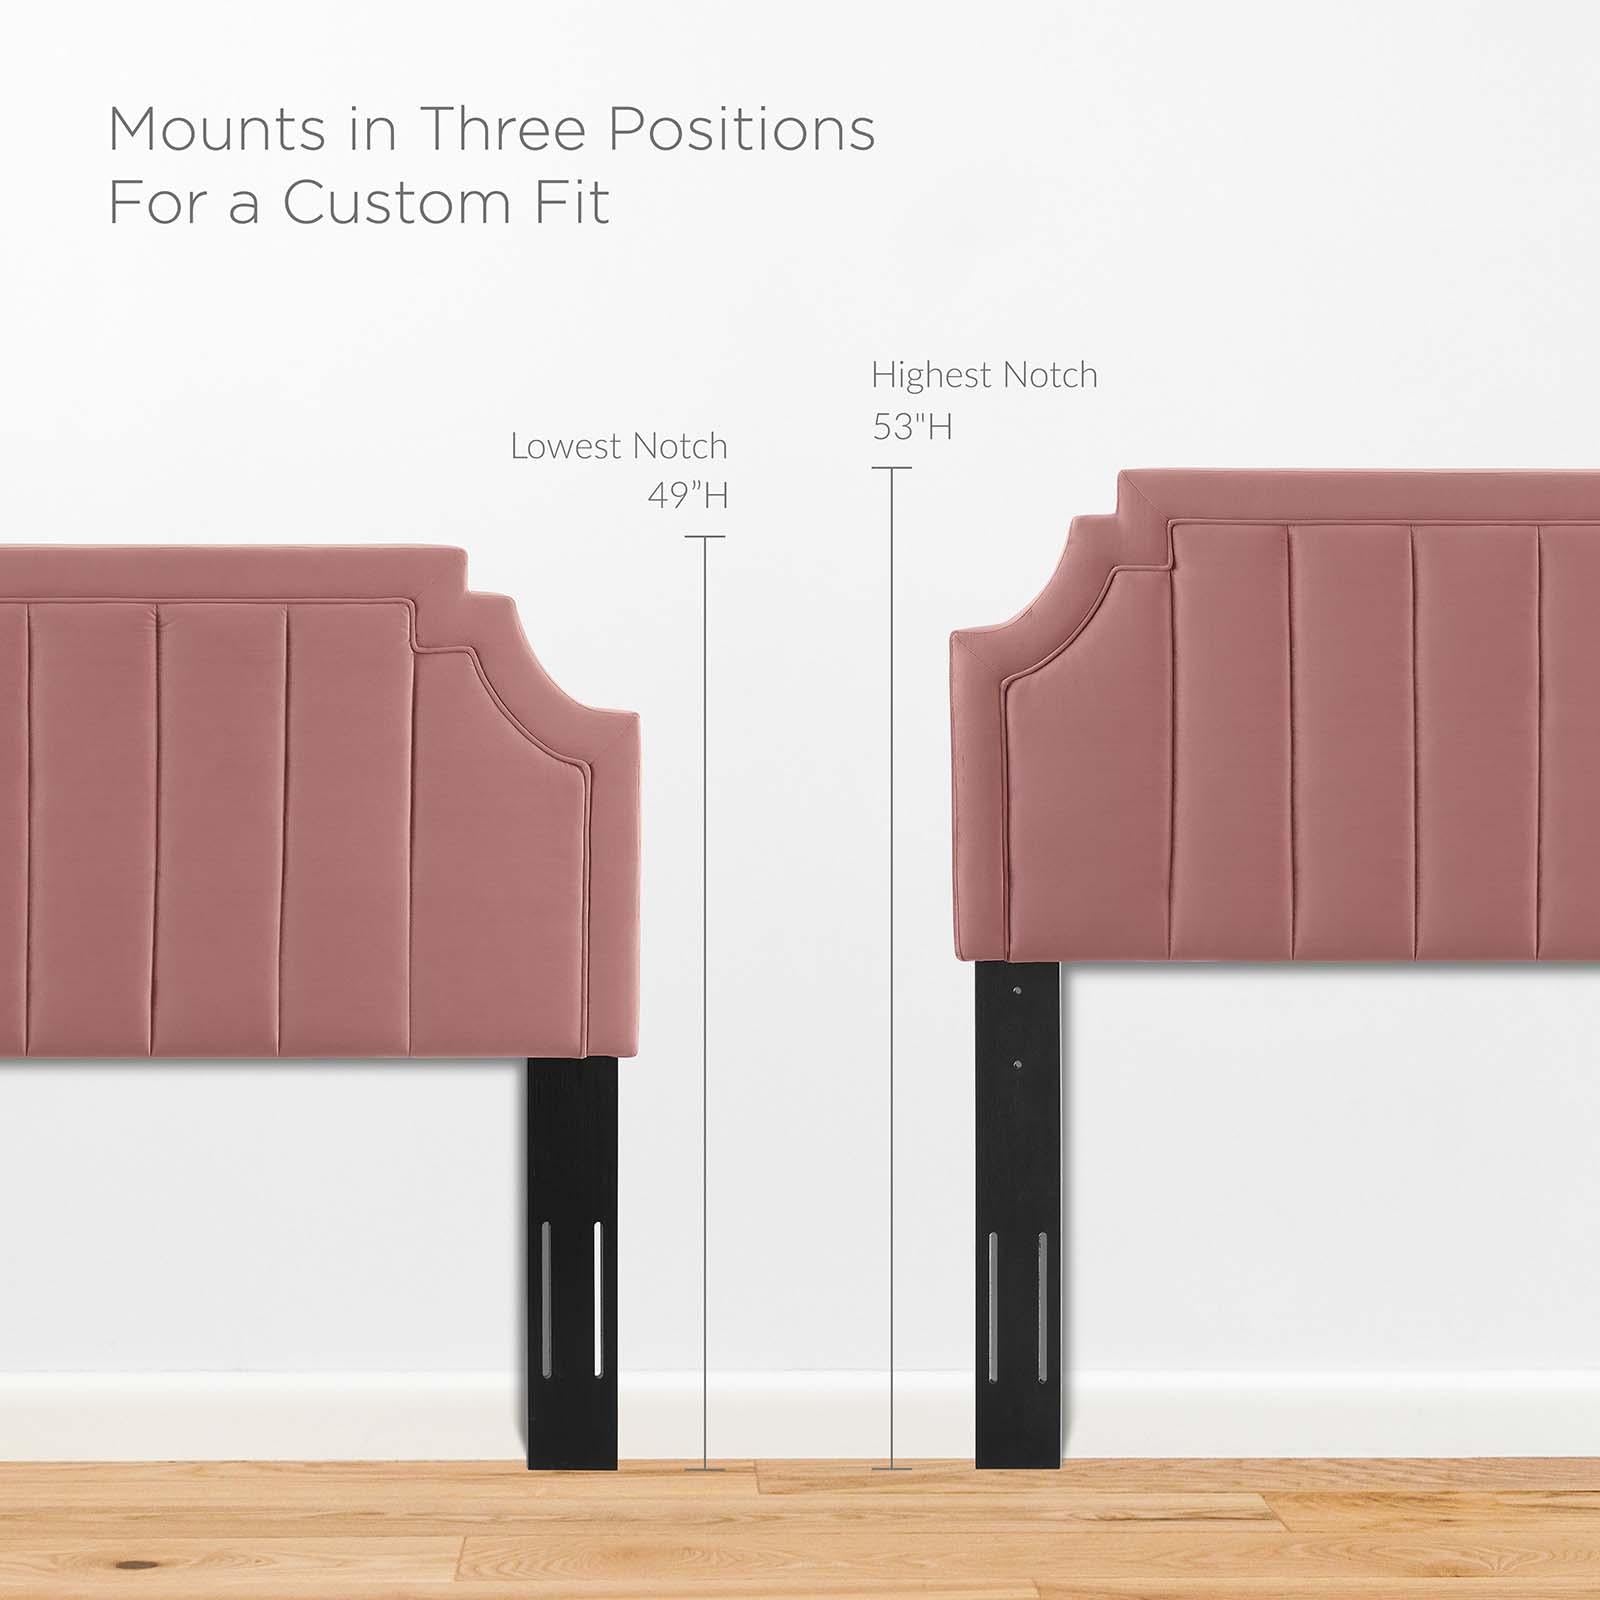 Modway Furniture Modern Sienna Performance Velvet King Platform Bed - MOD-6918